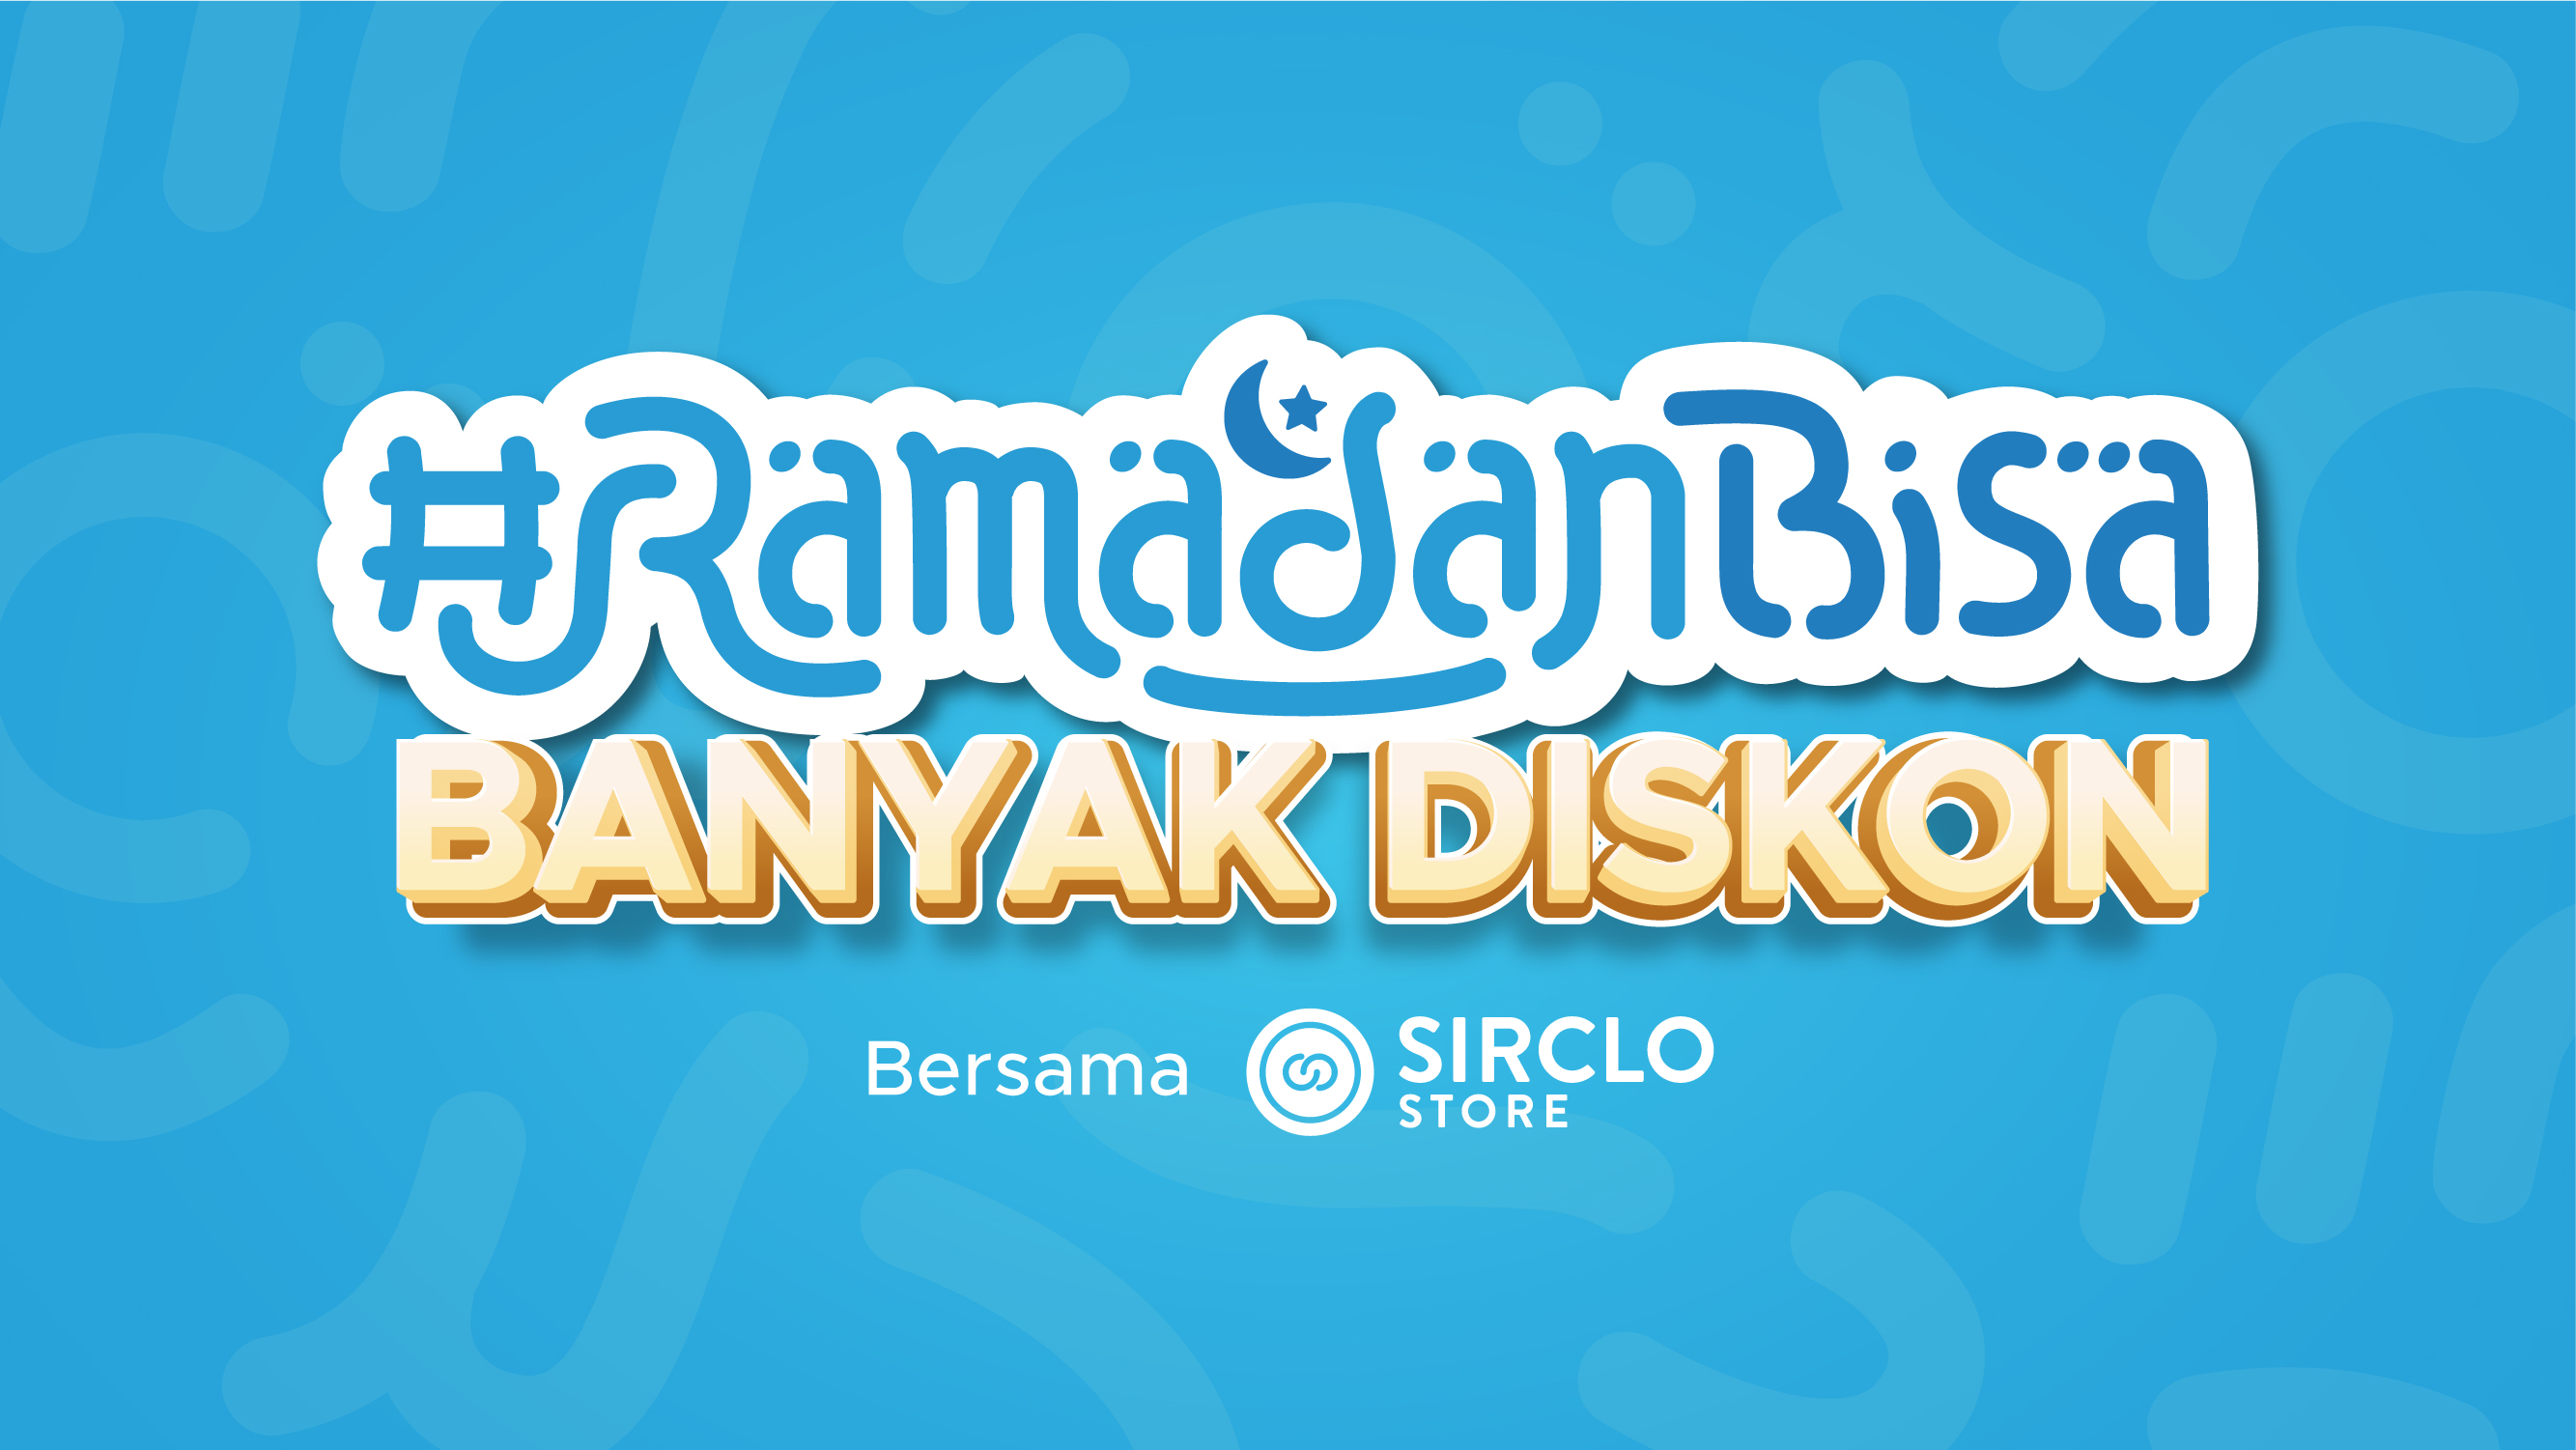 #RamadanBisa Banyak Diskon untuk Pelanggan Pakai SIRCLO Store